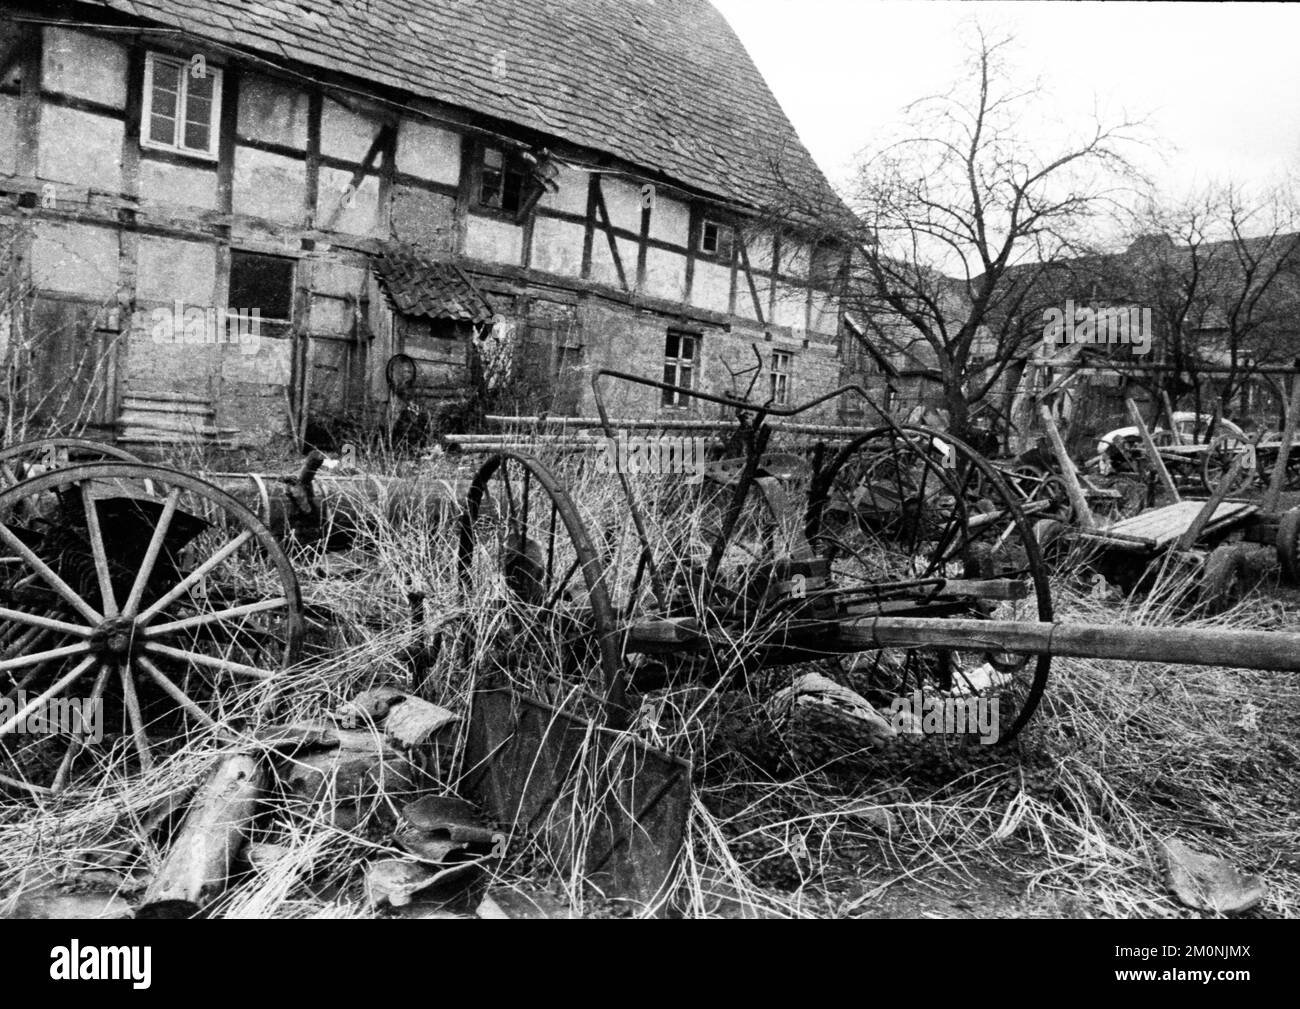 Simbolico per una parte dello stato dell'agricoltura - qui il 7.4.1972 a Schoenenhagen nel distretto di Uslar vicino a Northeim - è questo decadimento delle aziende agricole, Ger Foto Stock